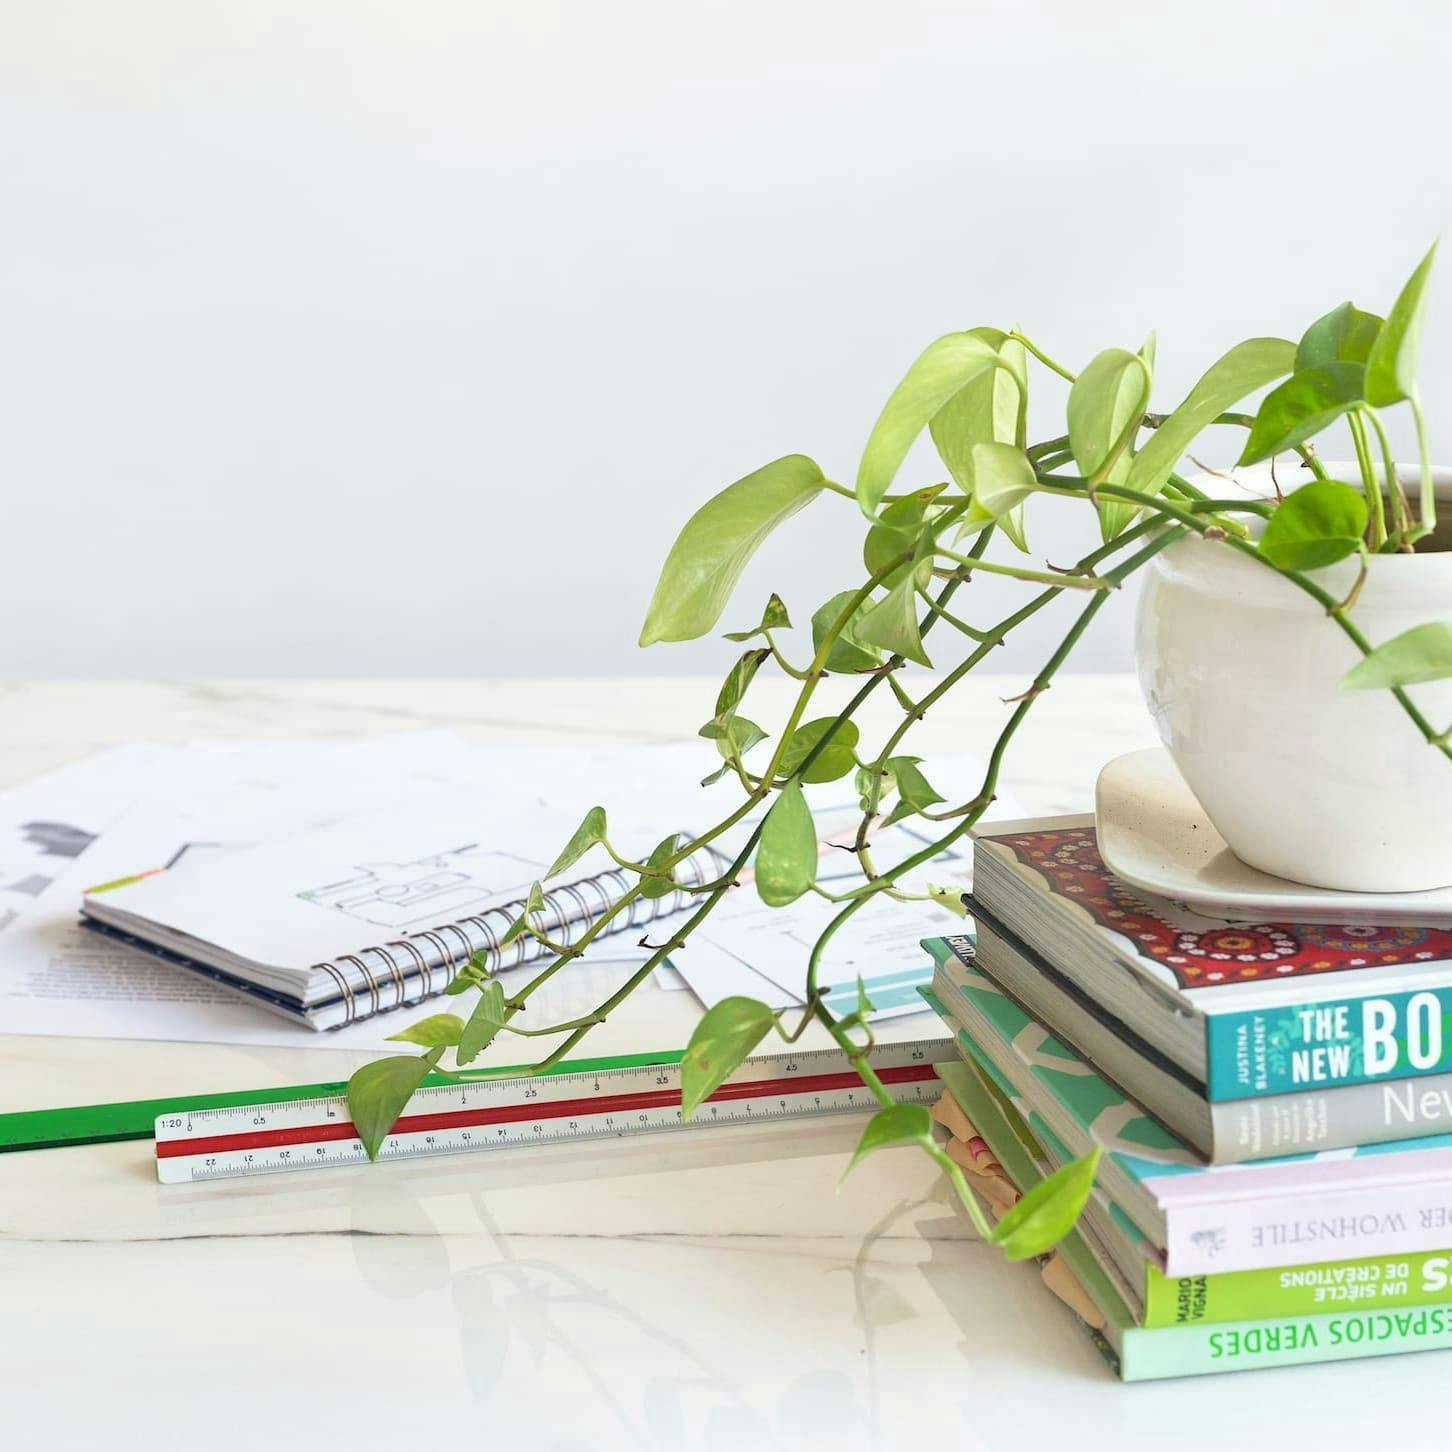 libros, cuaderno, escalimetro, papeles y una planta